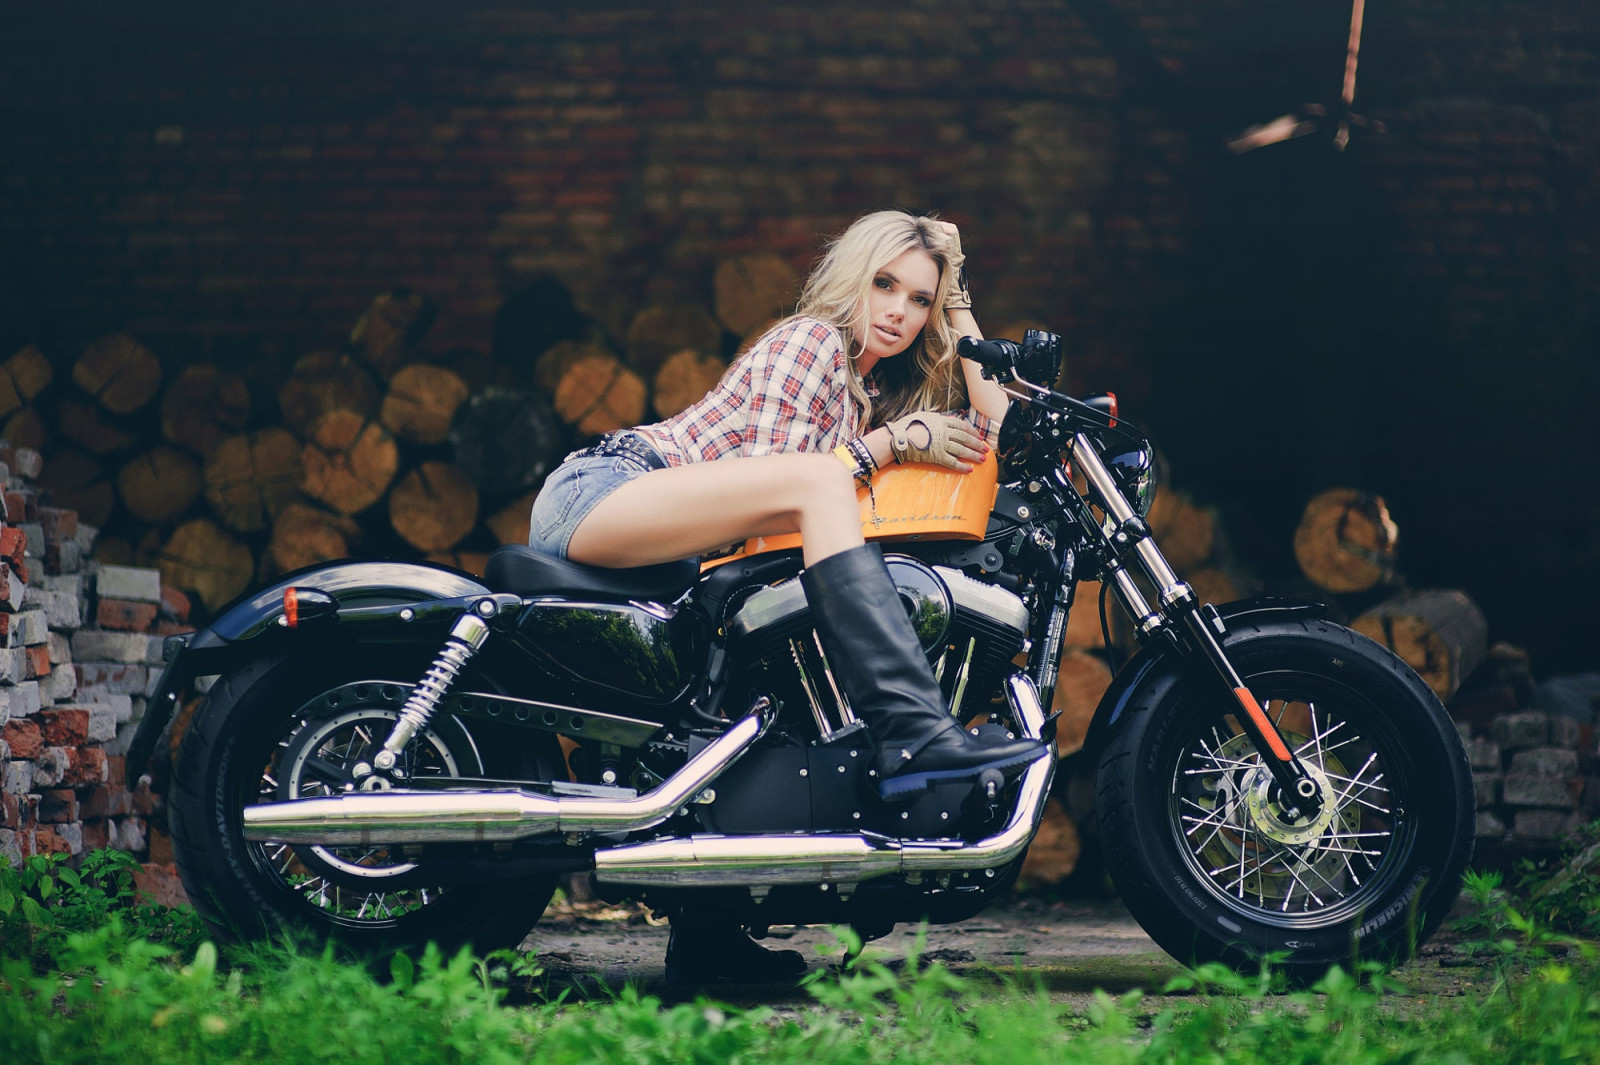 สาว, ภาพถ่าย, รองเท้าบูท, จักรยาน, Harley Davidson, ฮาร์เลย์, Maxim Gurtovoy